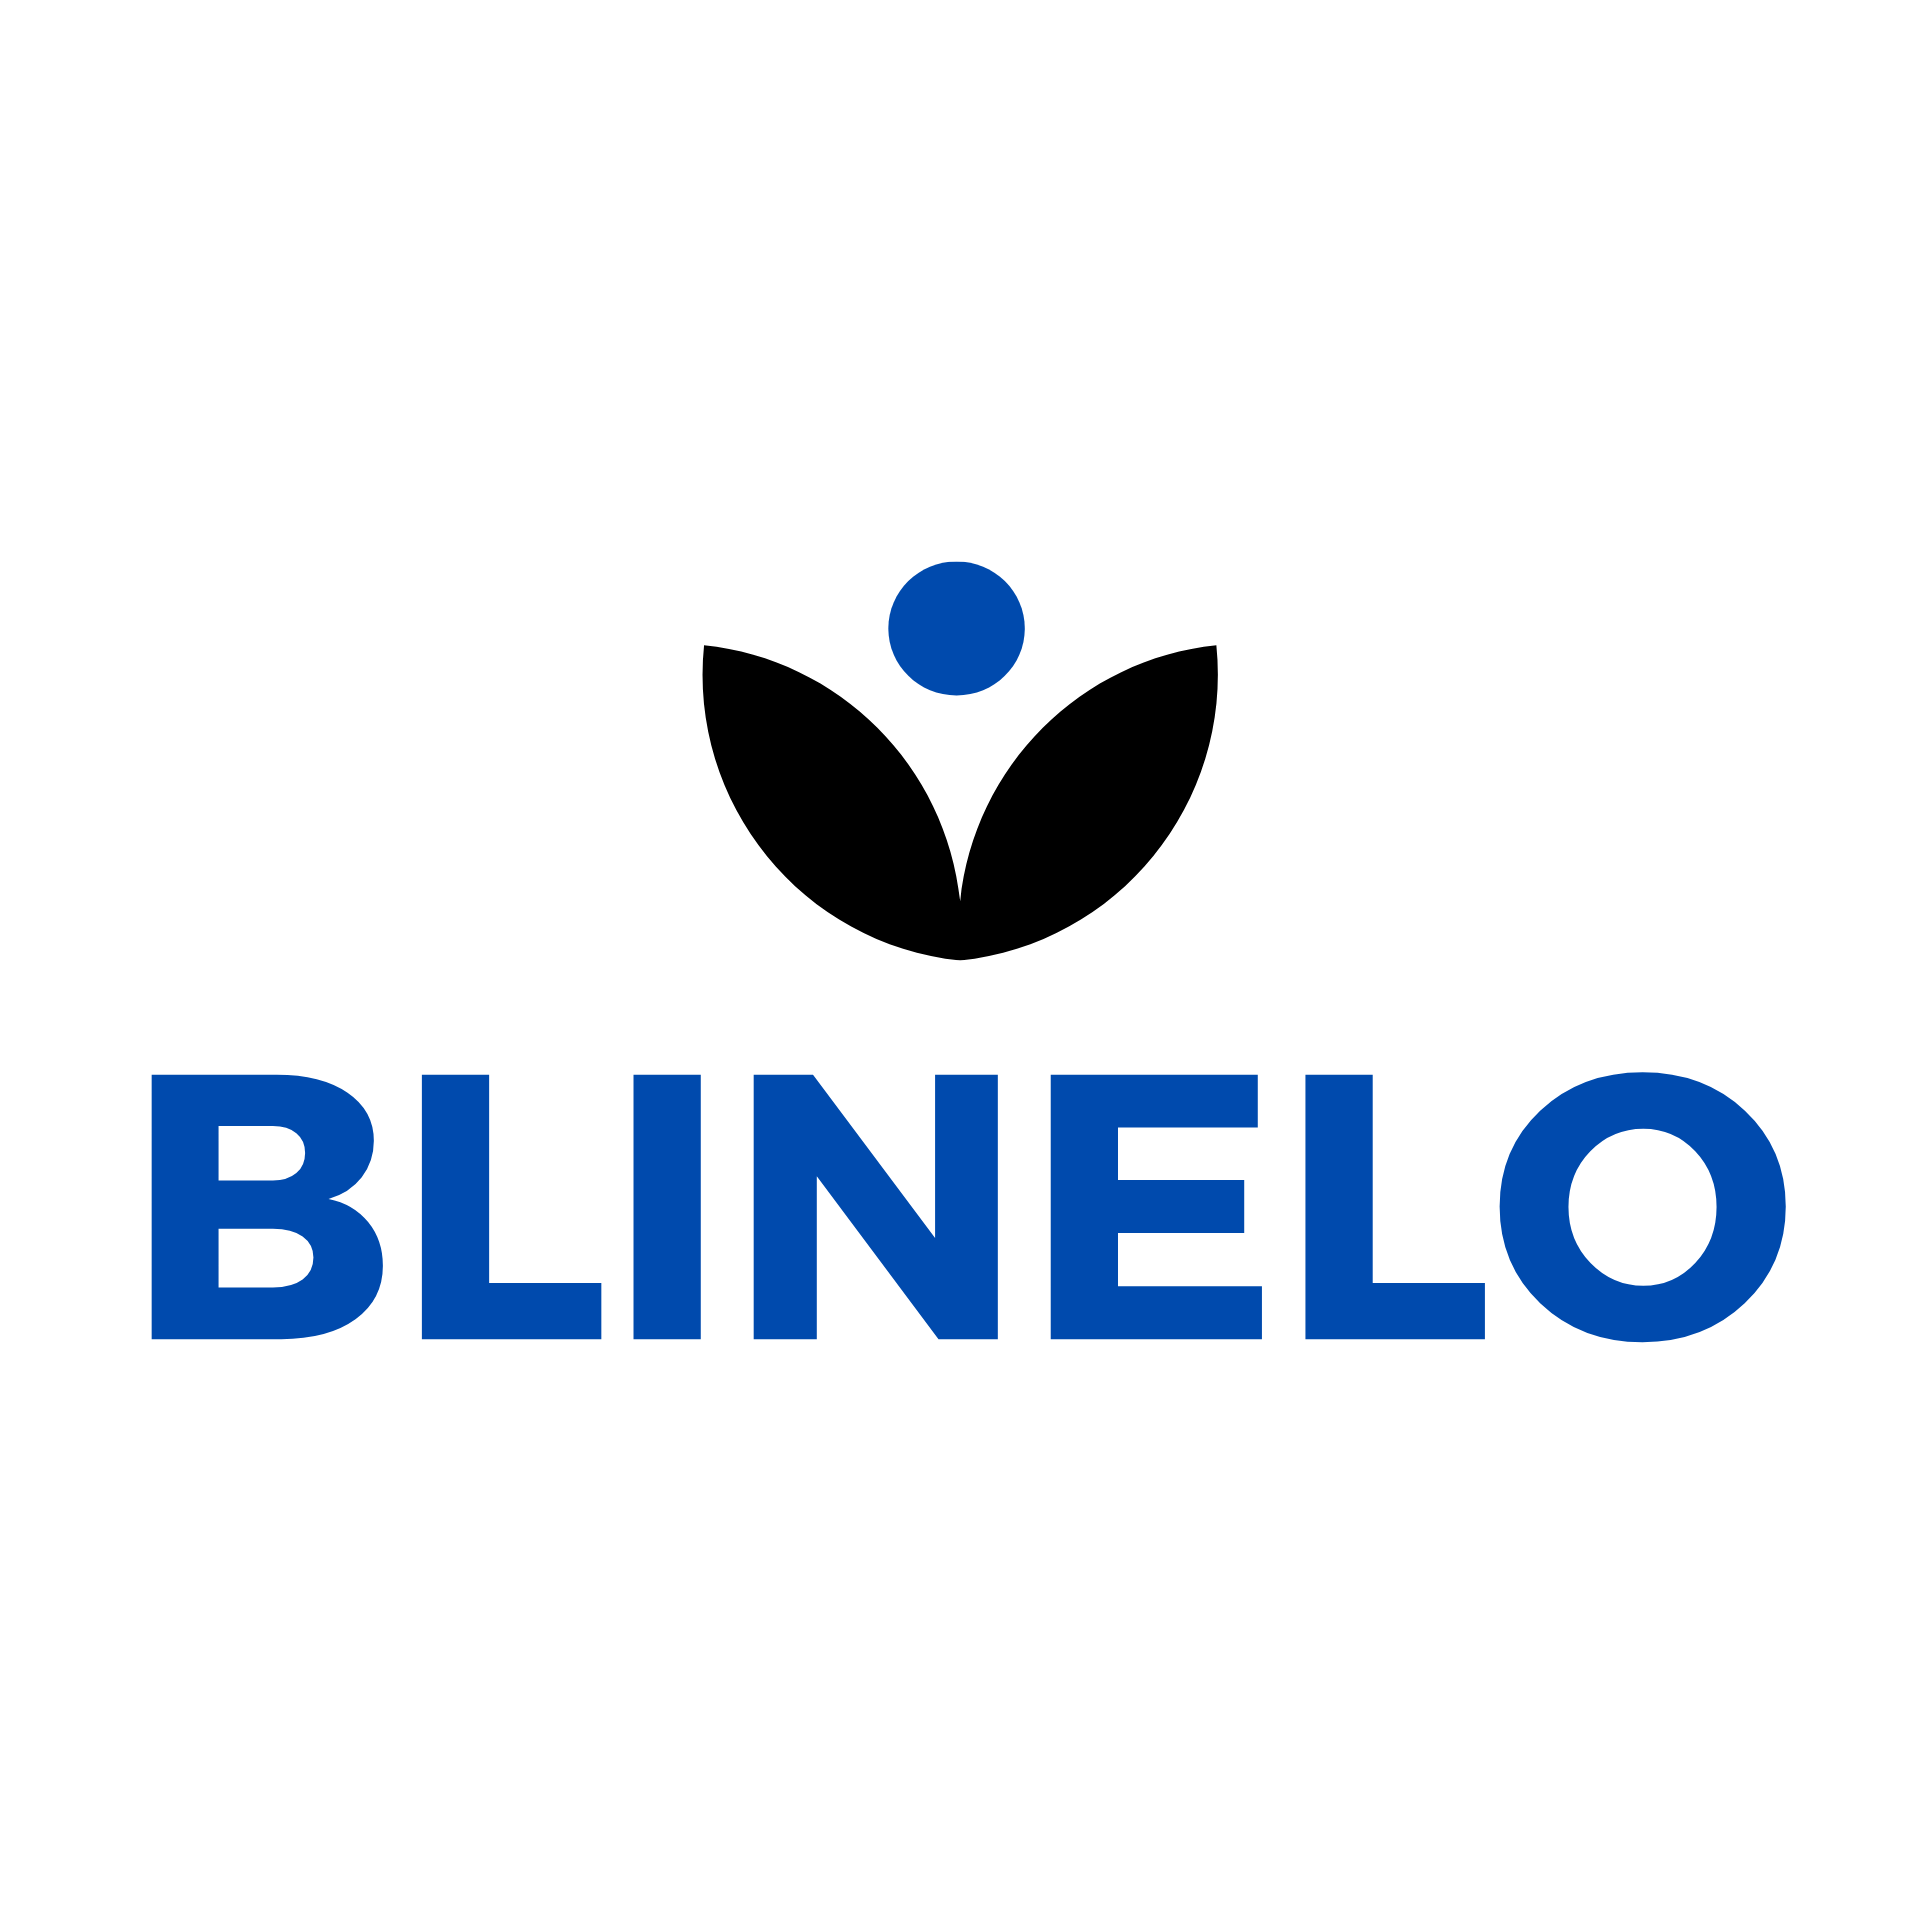 Blinelo